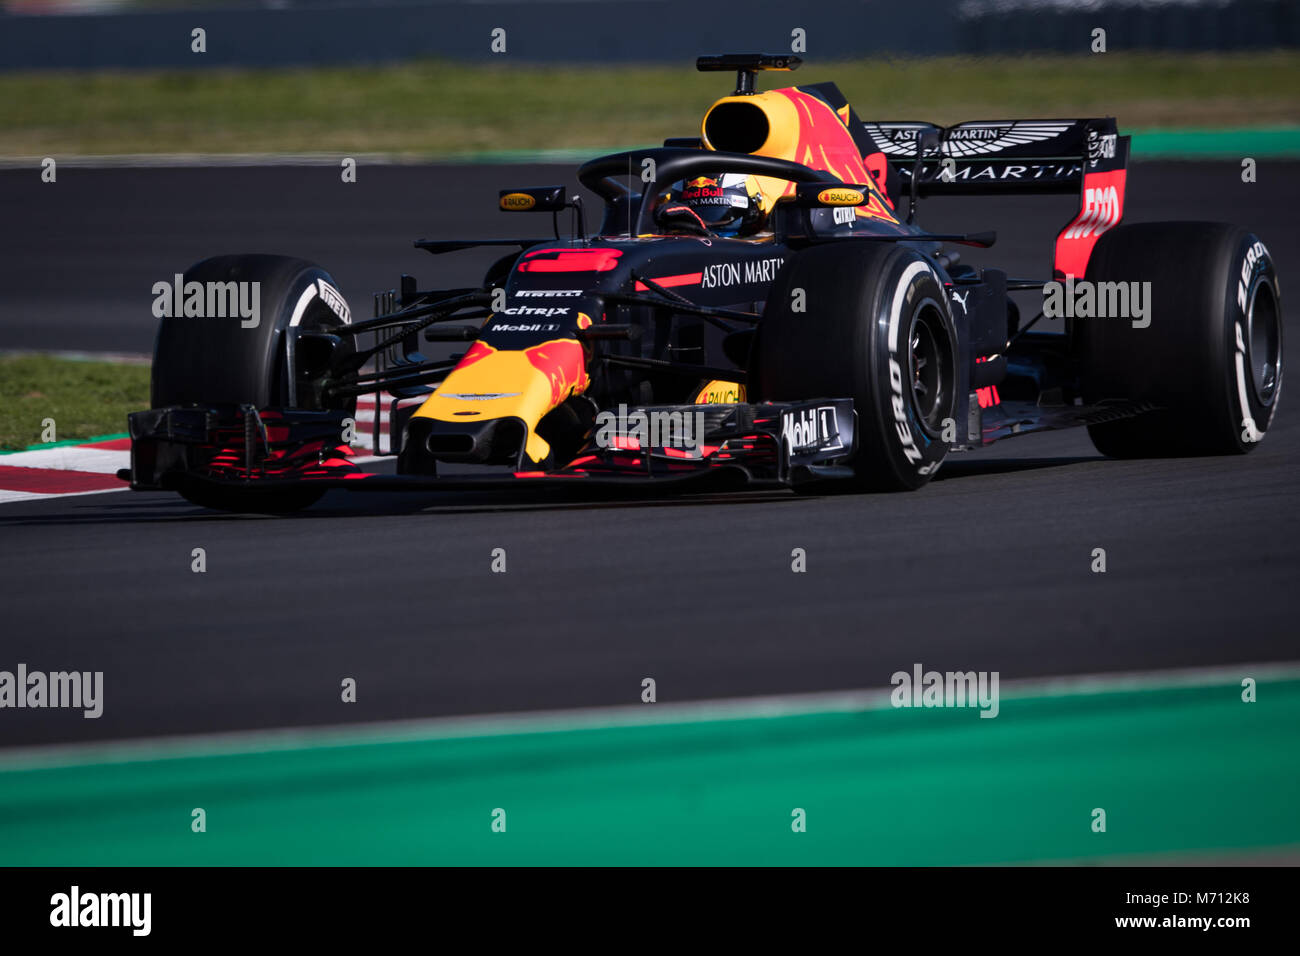 Montmelo, Catalogna, Spagna. 7 Mar, 2018. Daniel Ricciardo della RedBull Racing con Red Bull RB14 vettura durante i test F1 giorni nel circuito di Montmelò. Credito:  MA 6316.jpg/SOPA Immagini/ZUMA filo/Alamy Live News Foto Stock